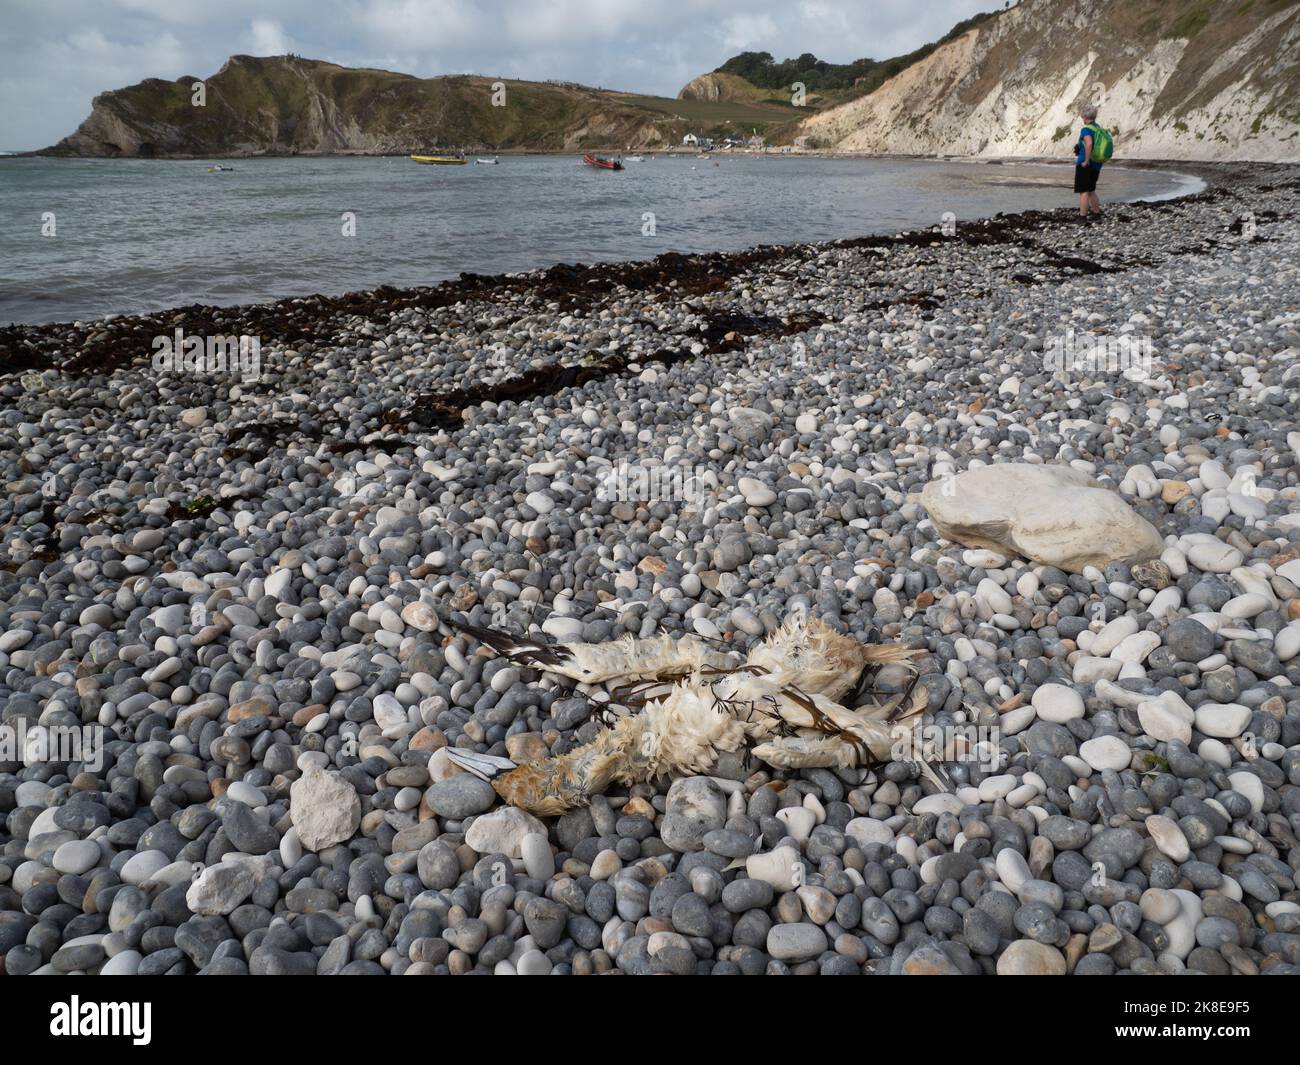 Dead gannet on beach Stock Photo